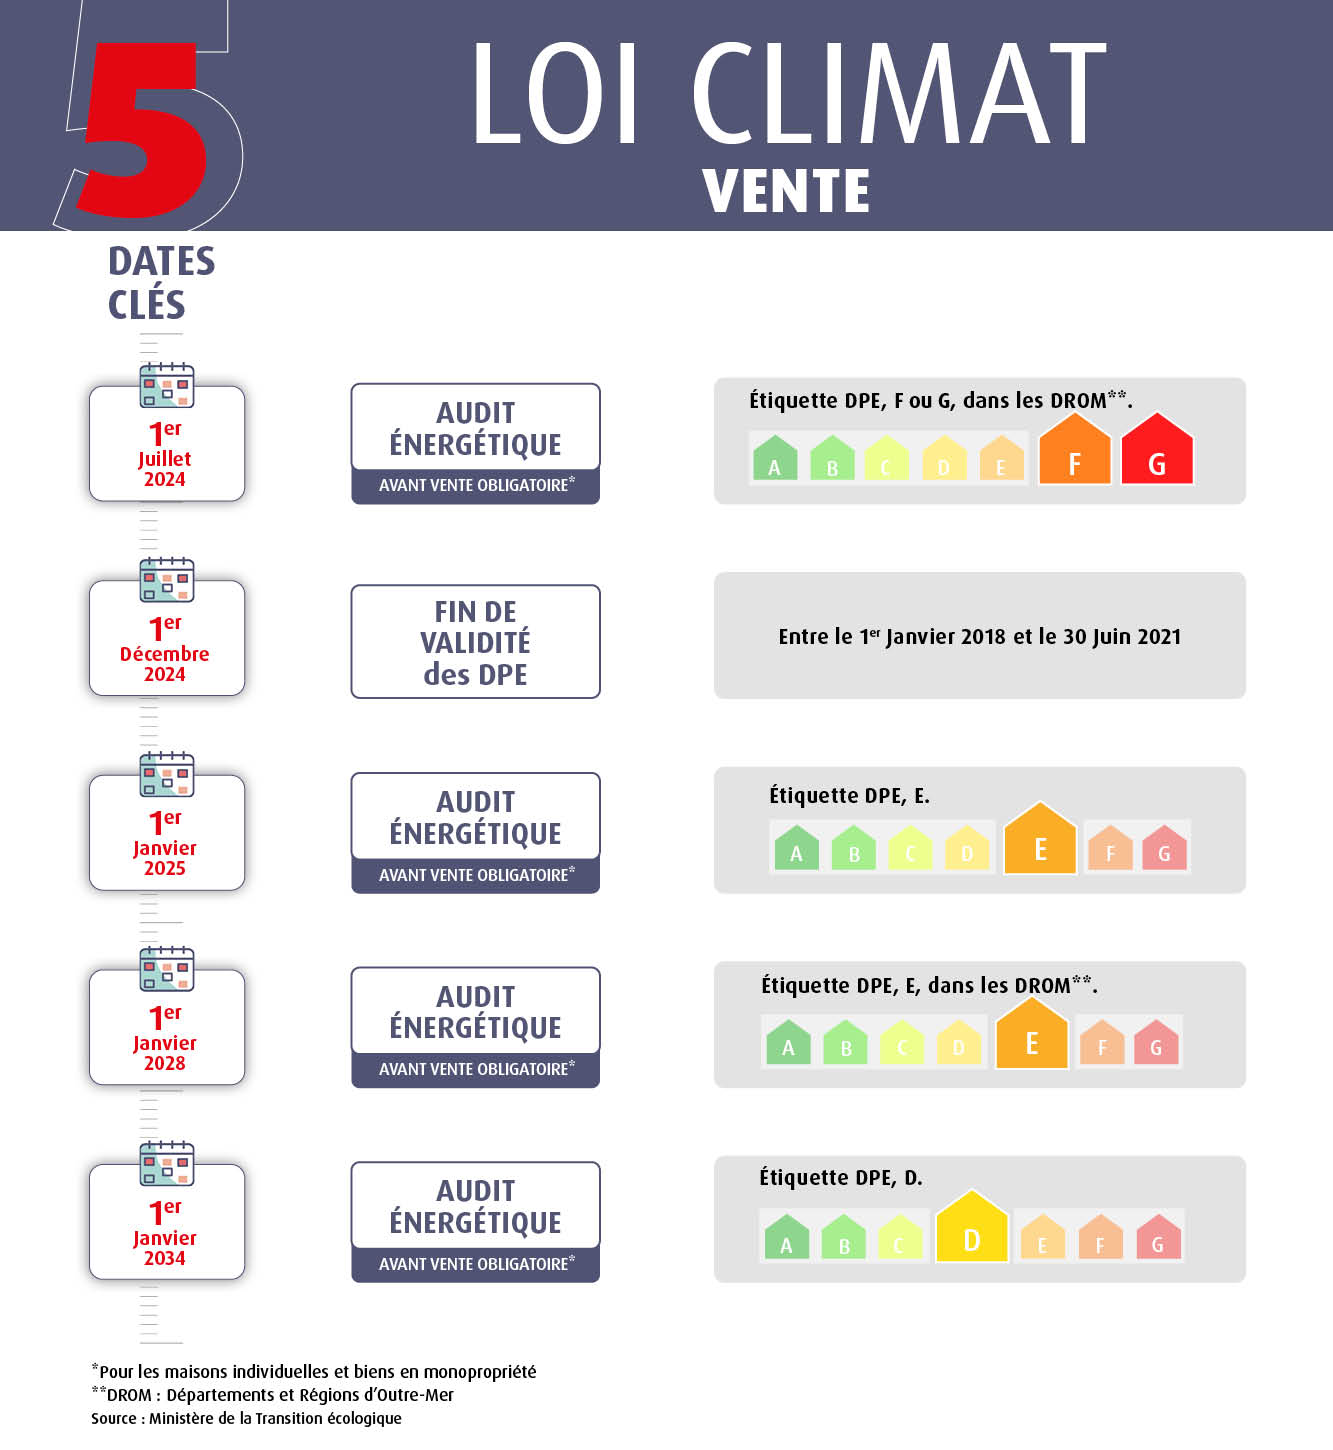 5 dates clés loi climat vente